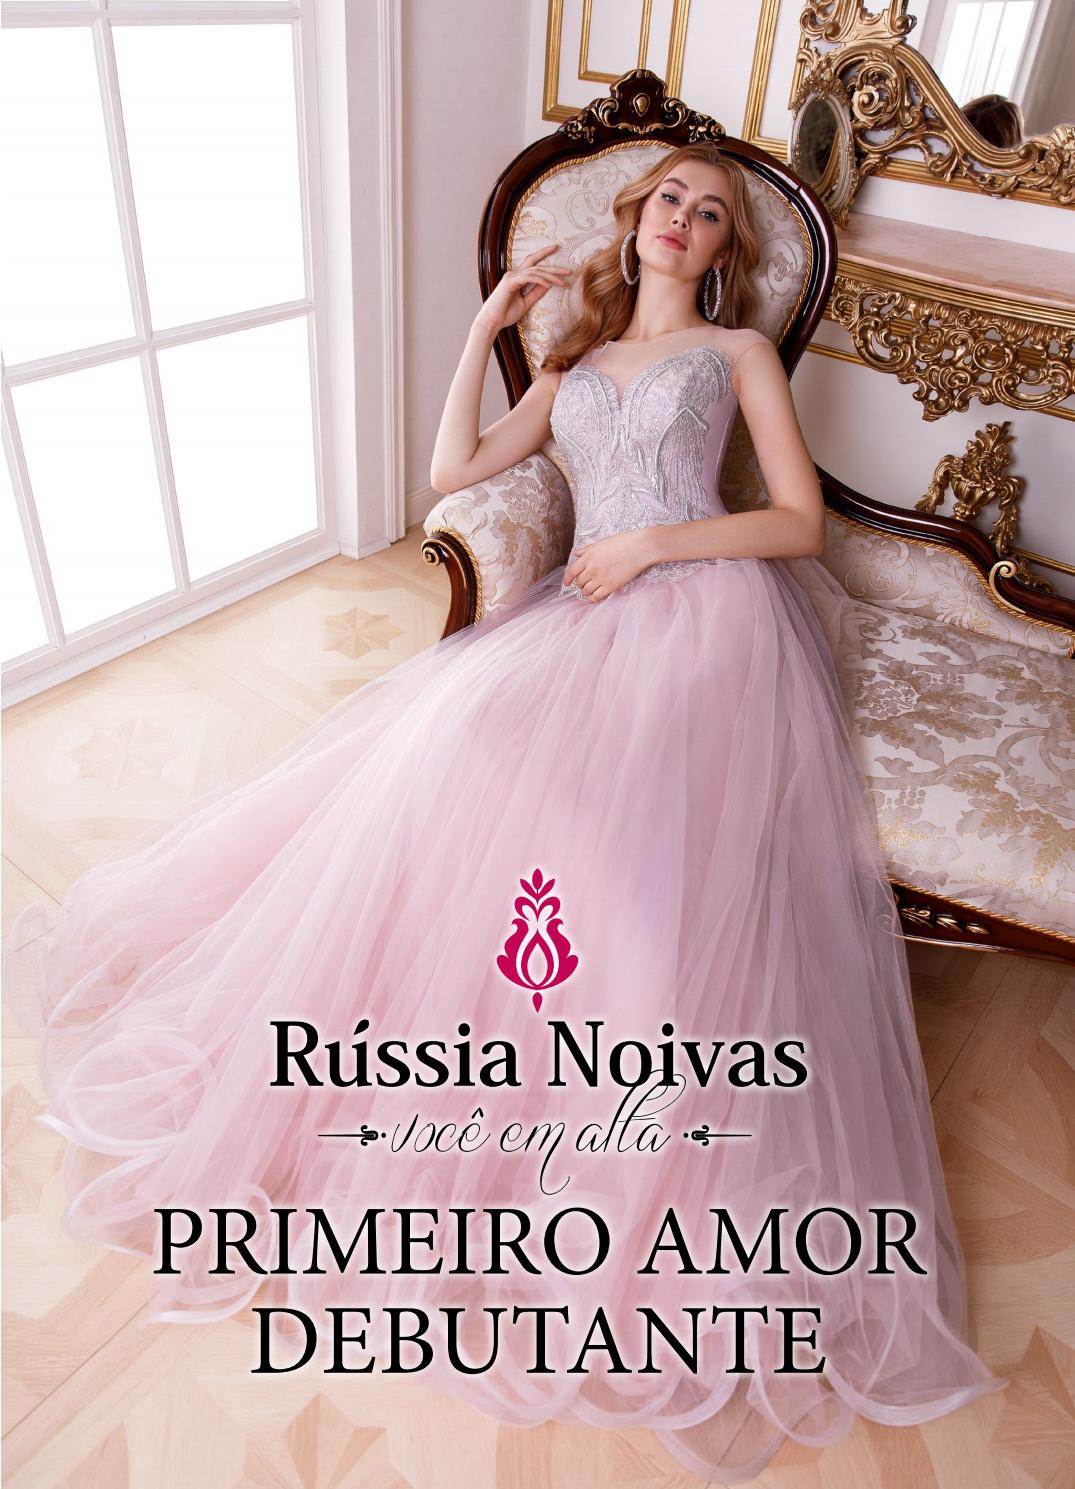 俄罗斯知名婚纱礼服设计画册大全_流行趋势_Russia Noivas2019